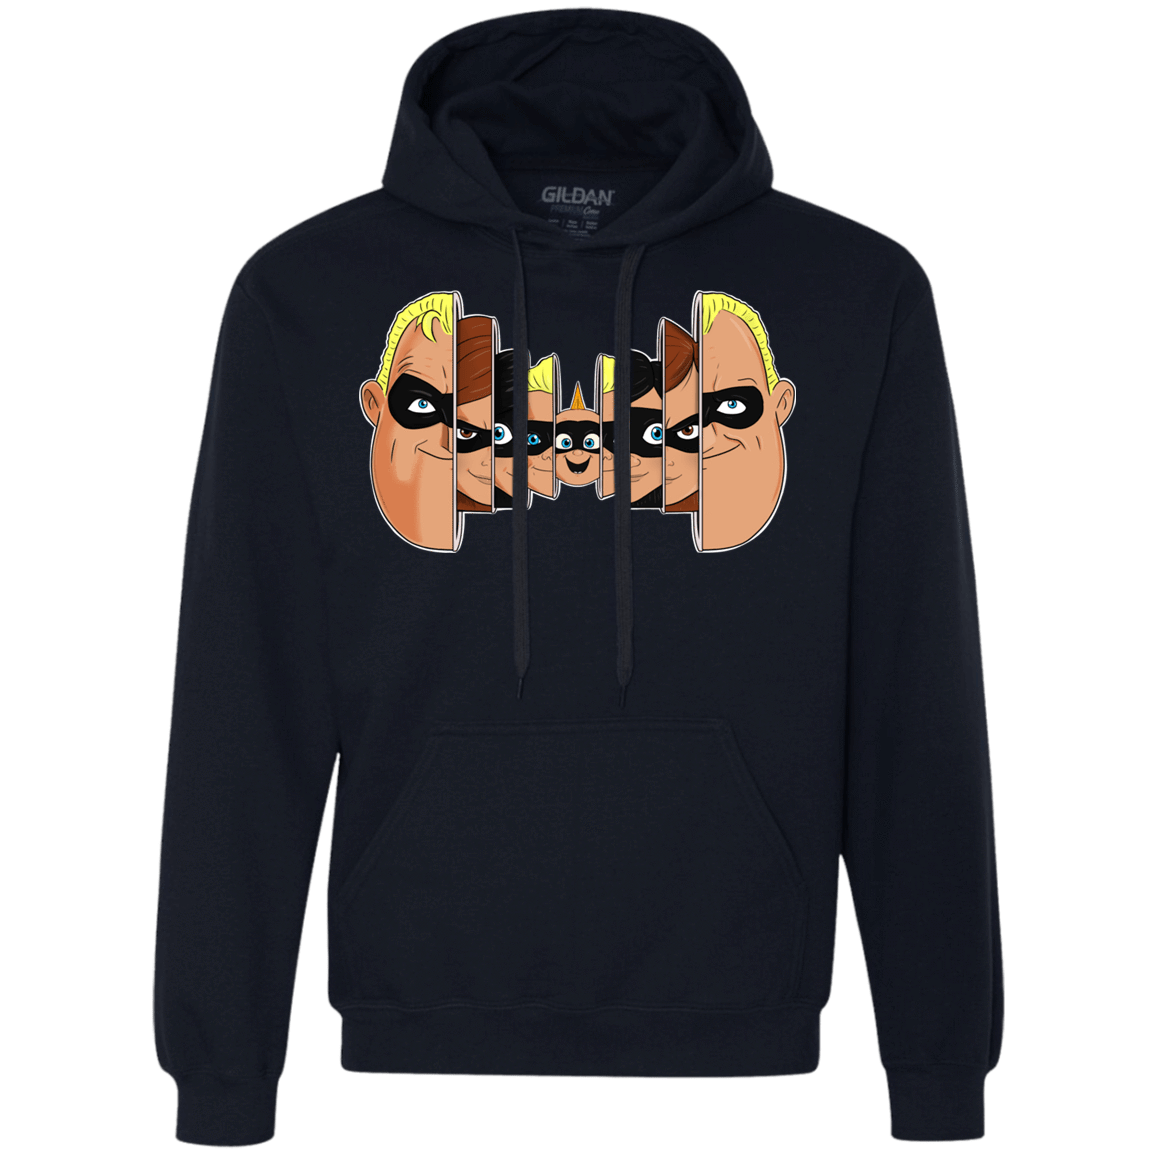 Sweatshirts Navy / S Incredibles Premium Fleece Hoodie